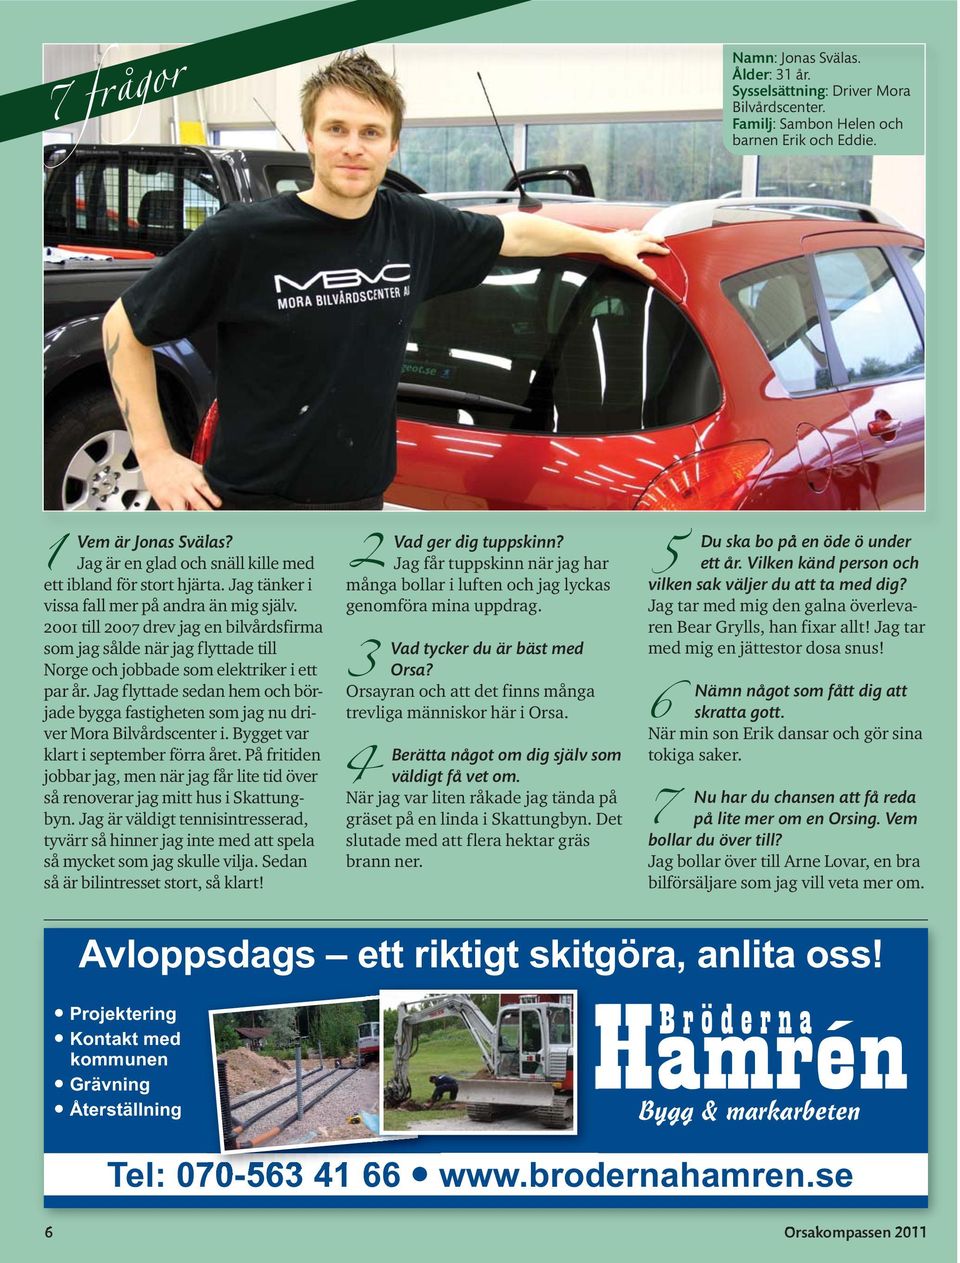 2001 till 2007 drev jag en bilvårdsfirma som jag sålde när jag flyttade till Norge och jobbade som elektriker i ett par år.